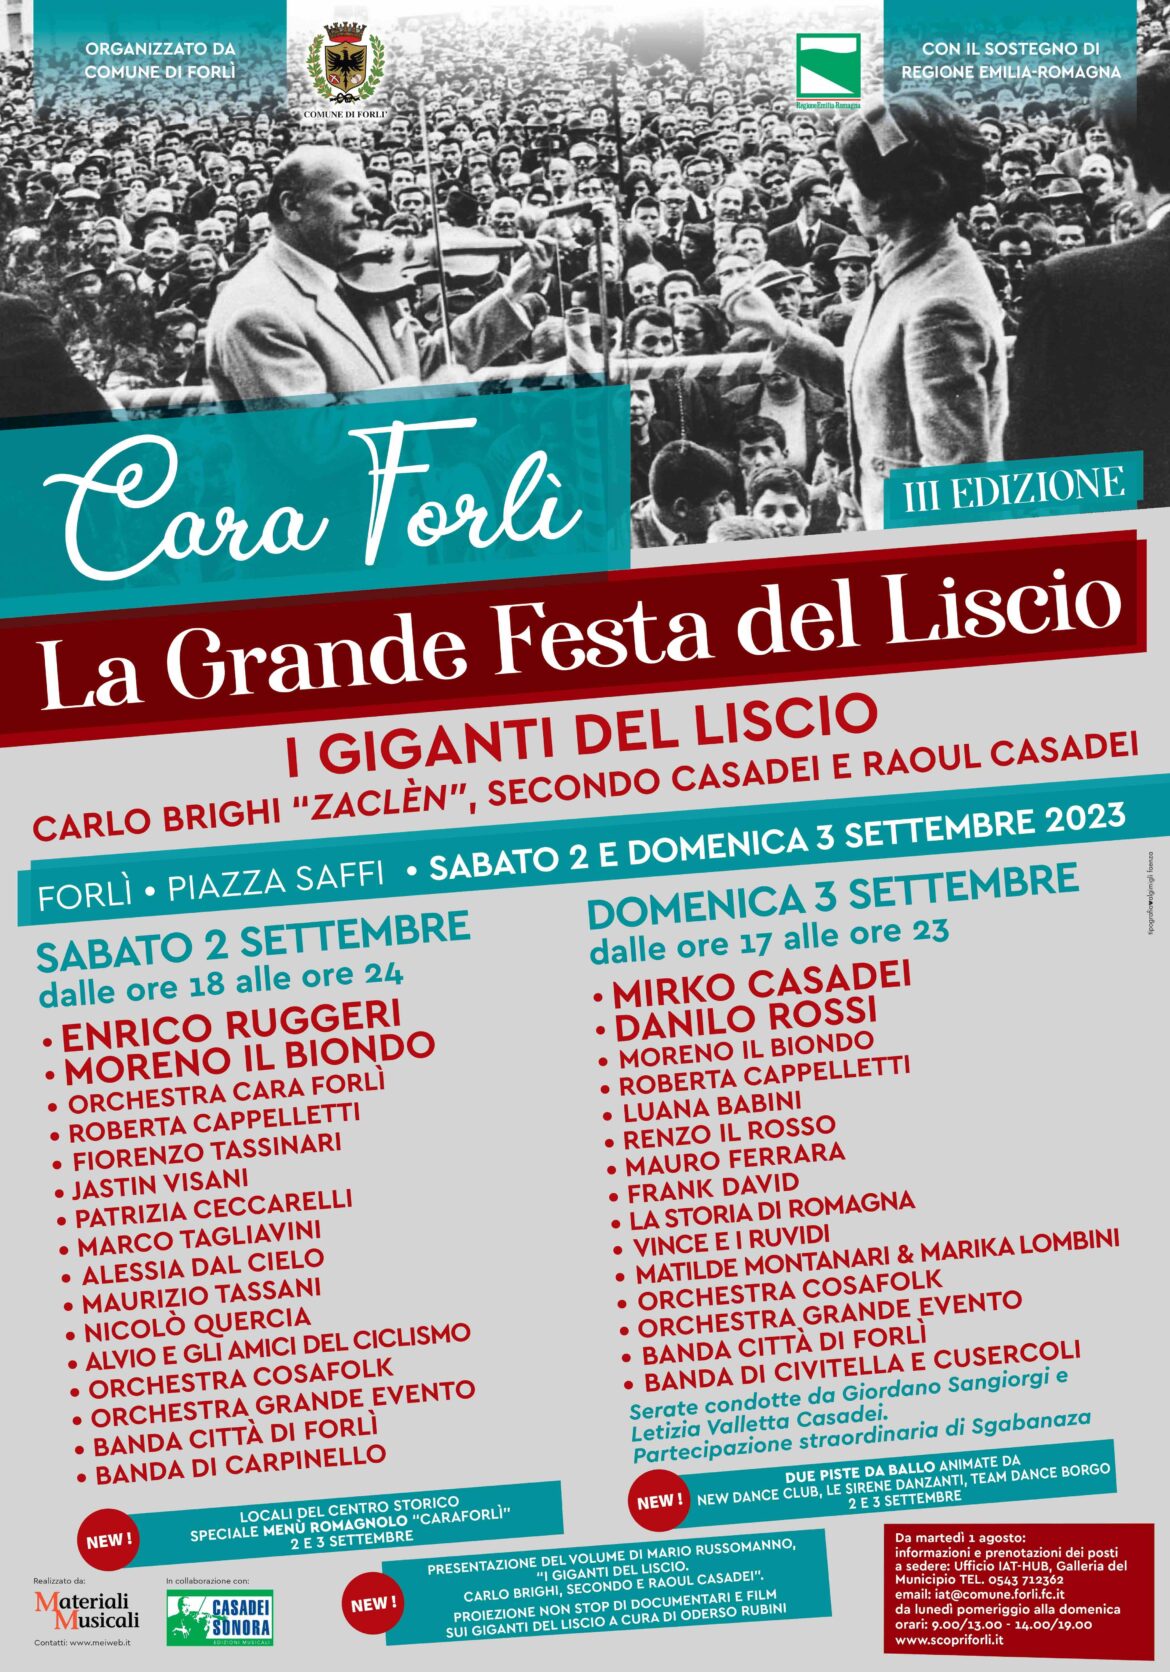 Locandina evento Cara Forlì